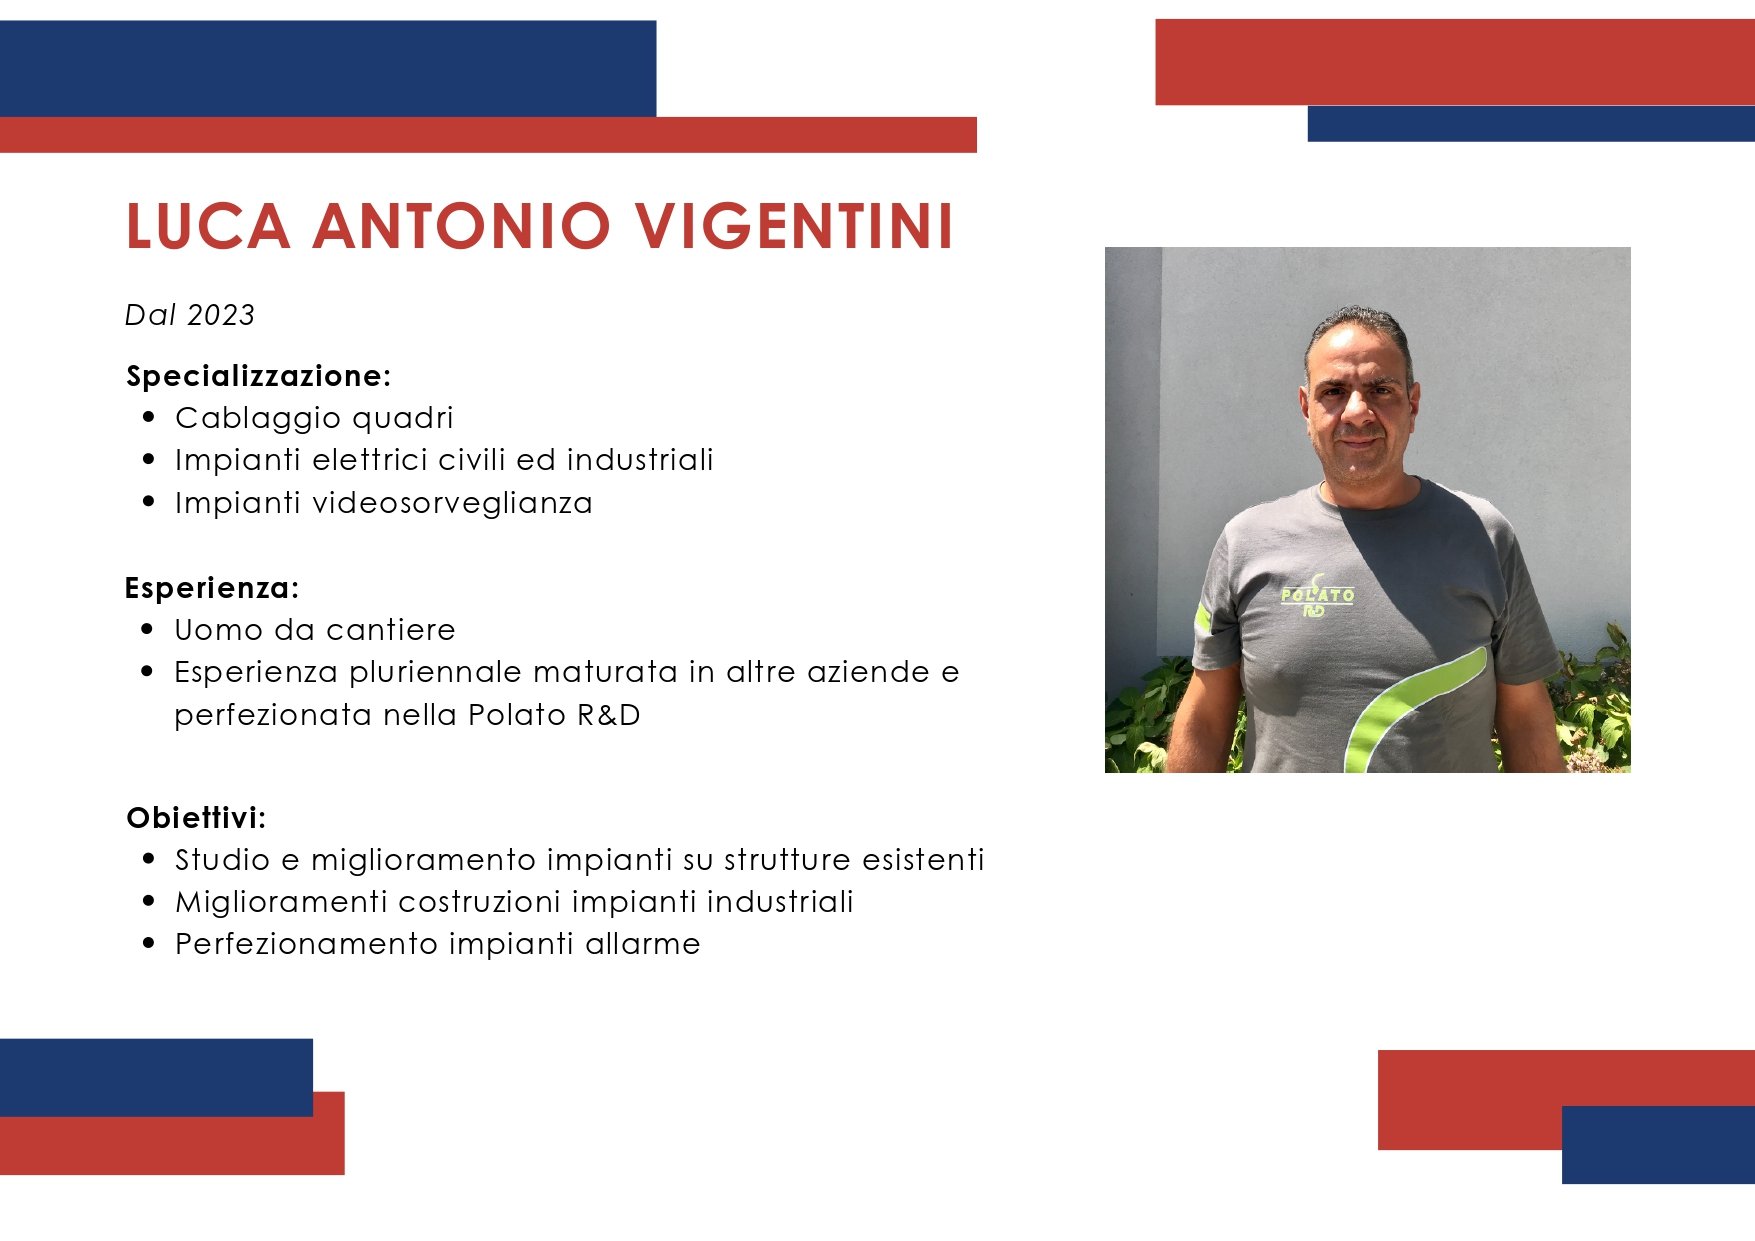 Luca Antonio Vigentini